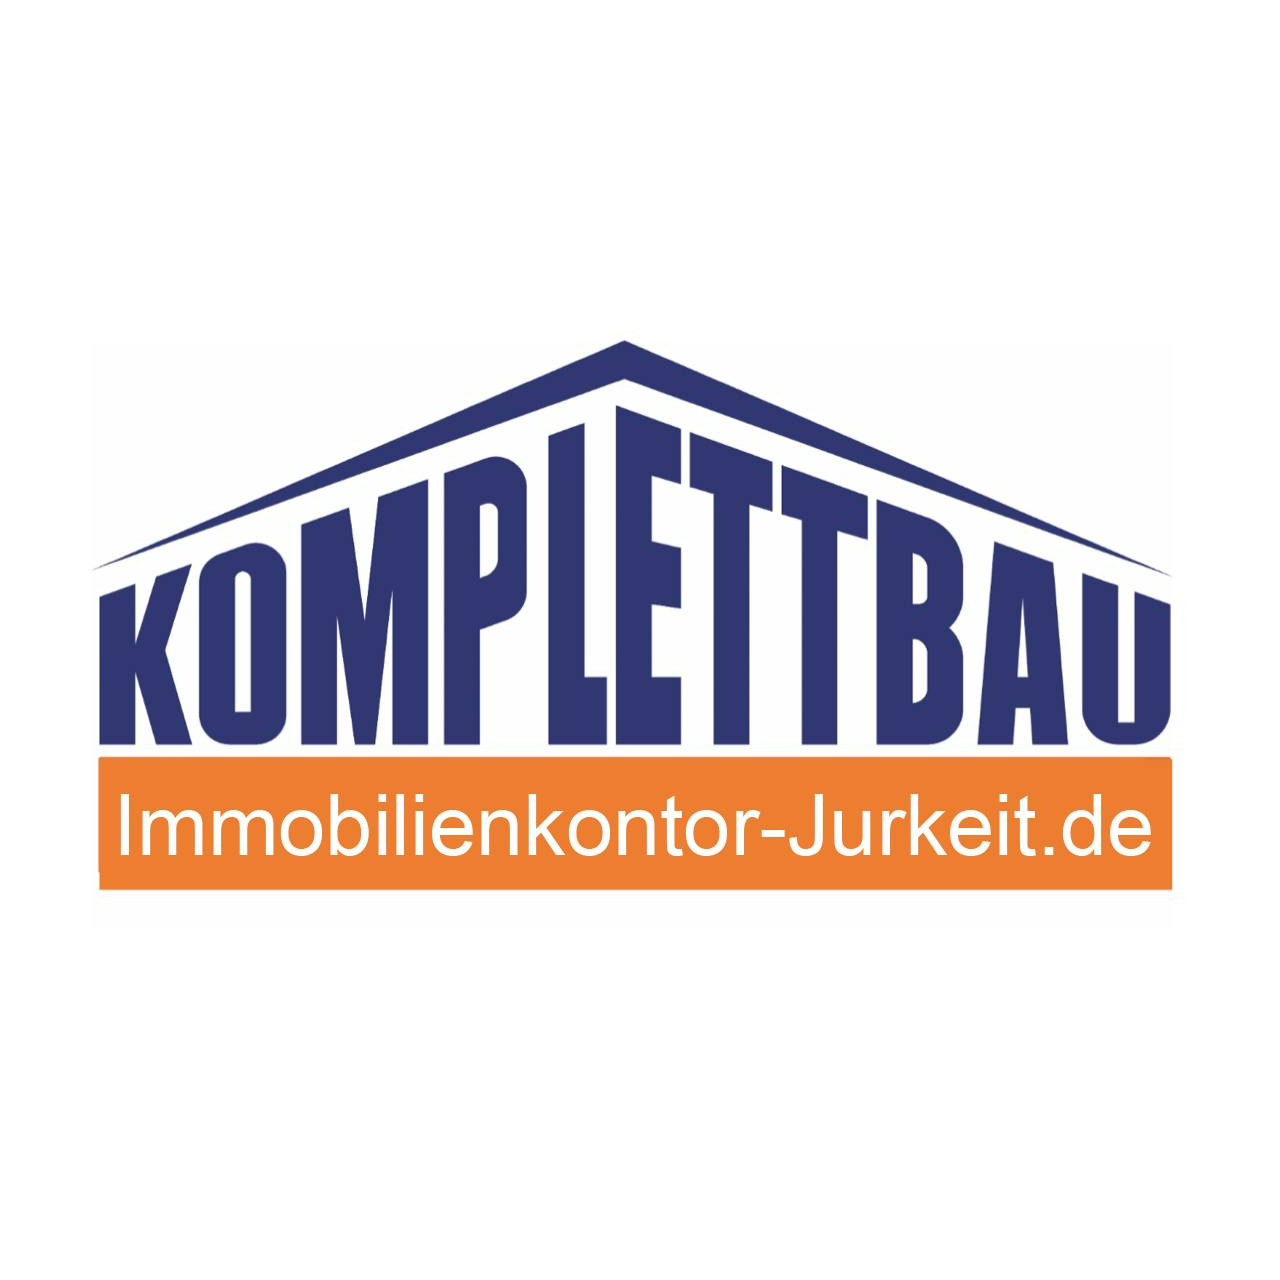 Jurkeit Komplettbau GmbH & Co. Grundstücks- und Bauträger KG in Bremerhaven - Logo